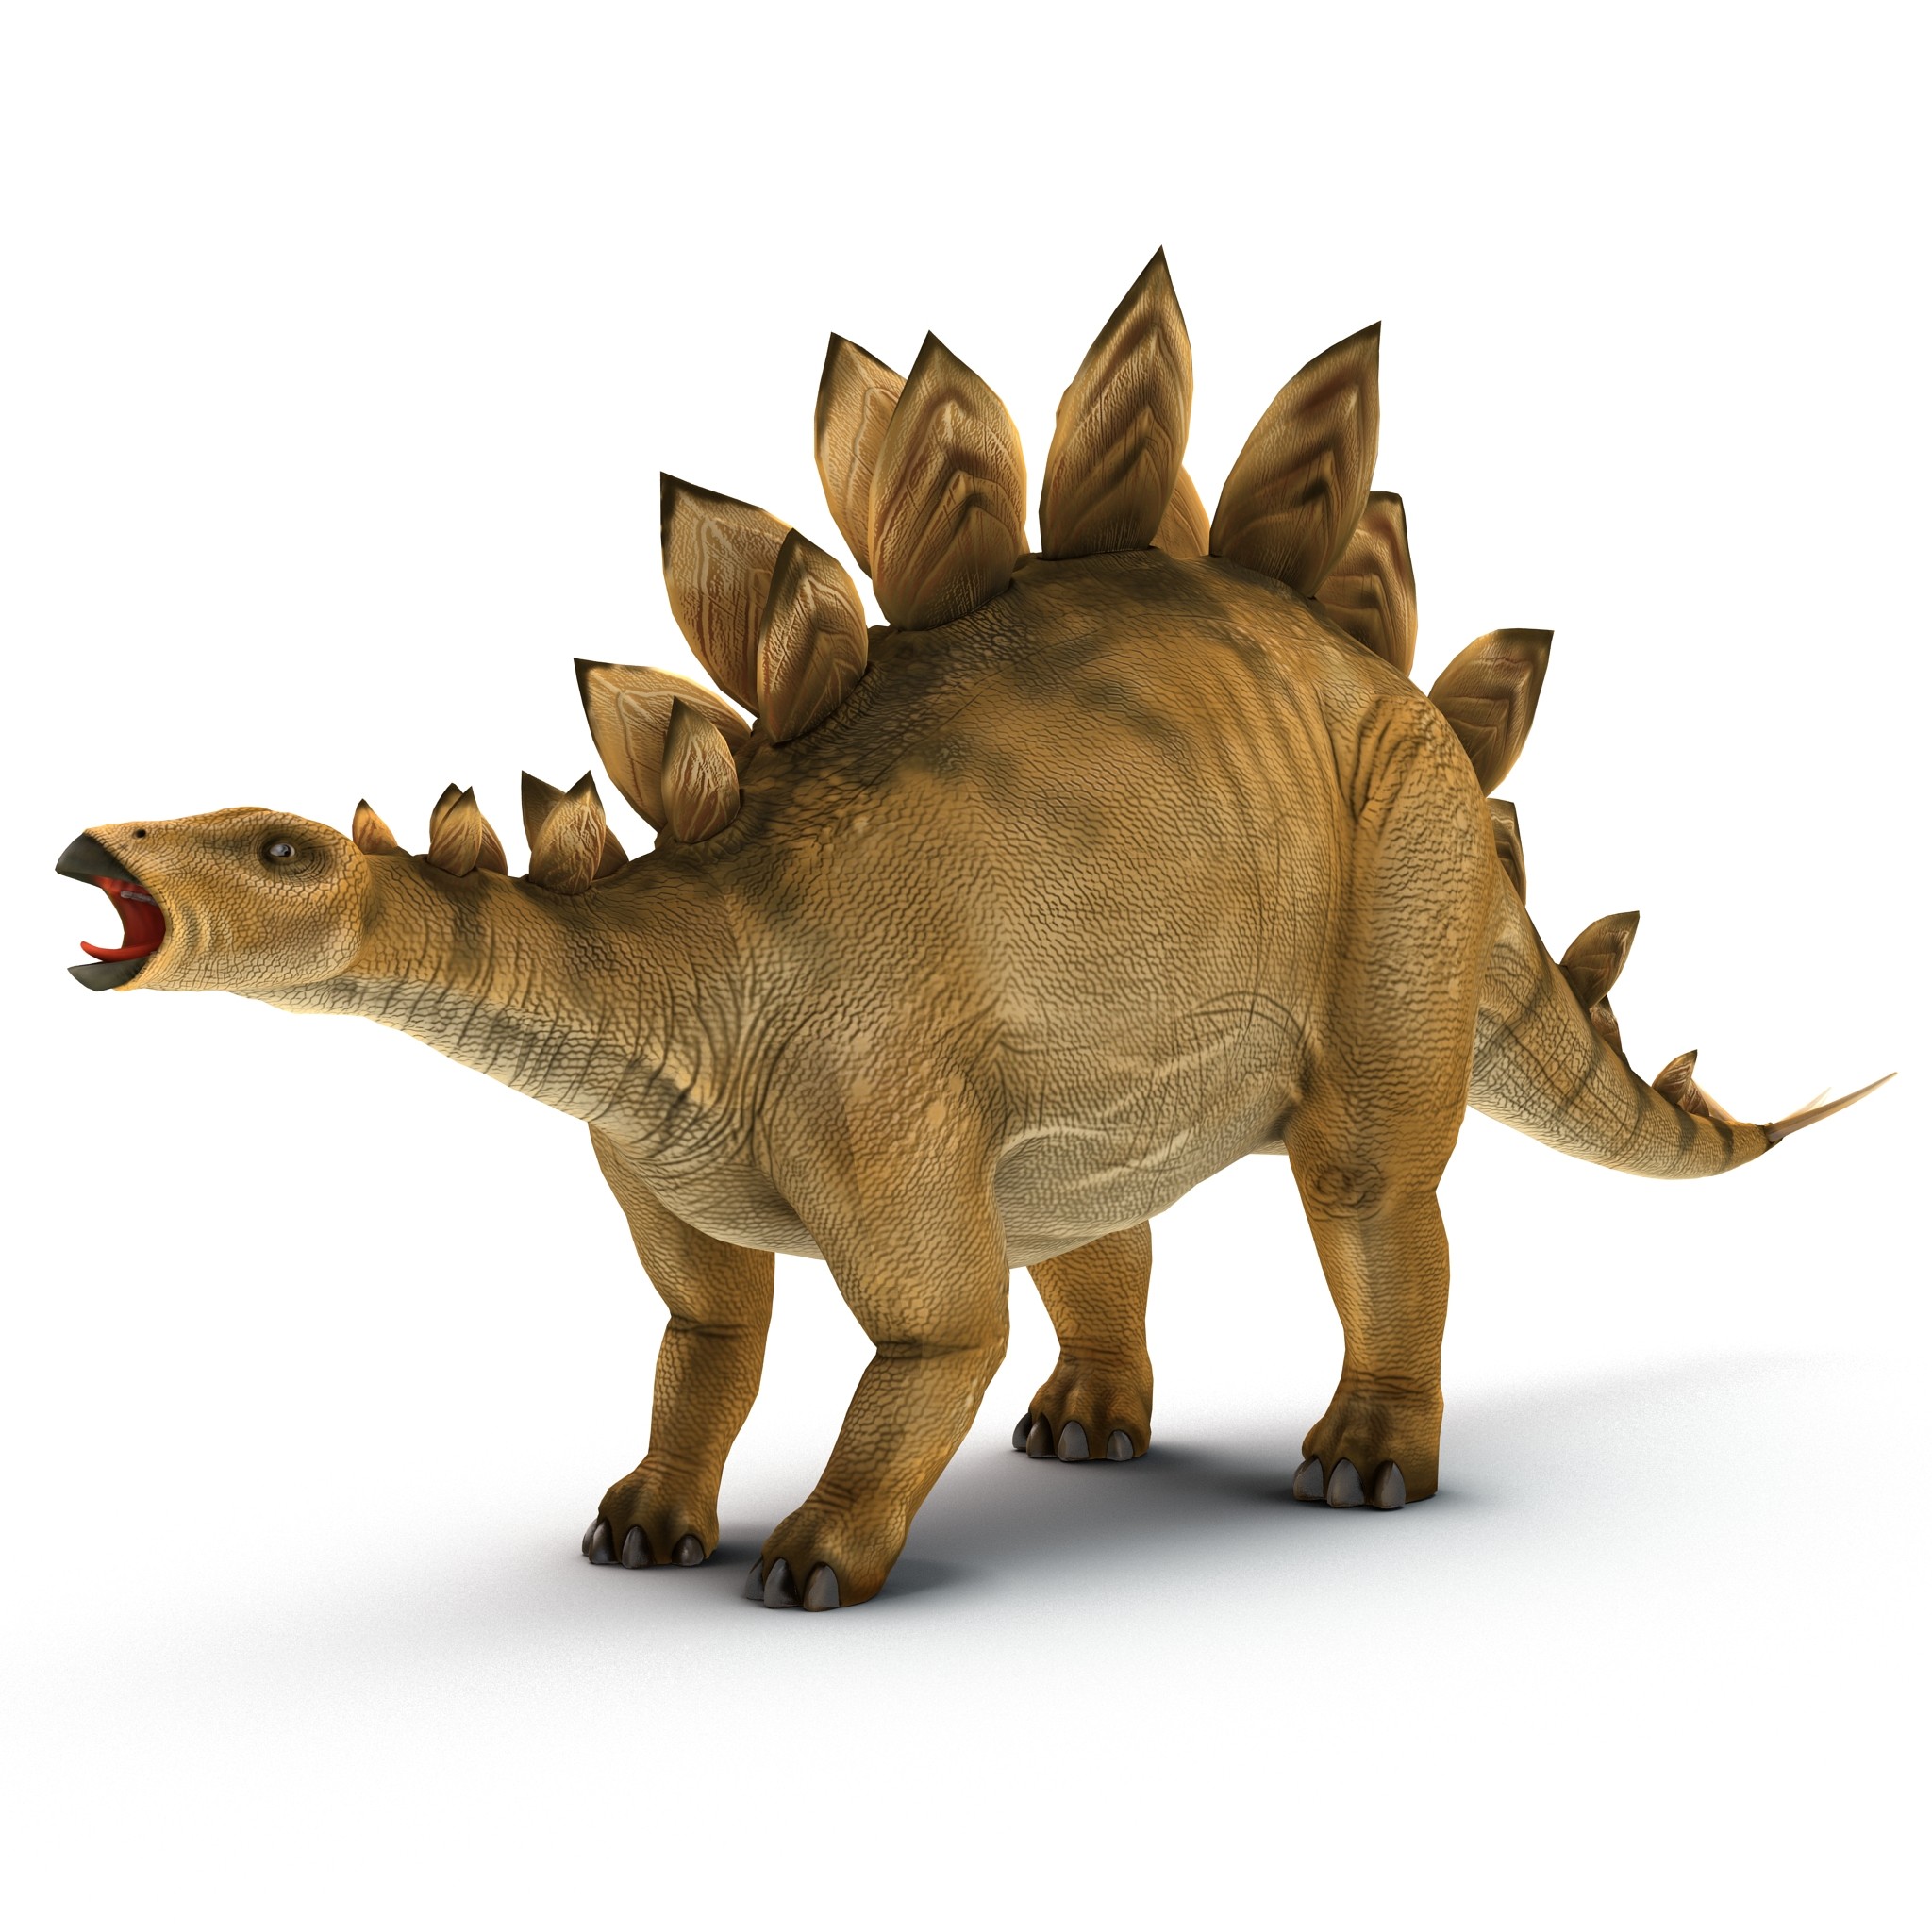 Wallpaper Stegosaurus